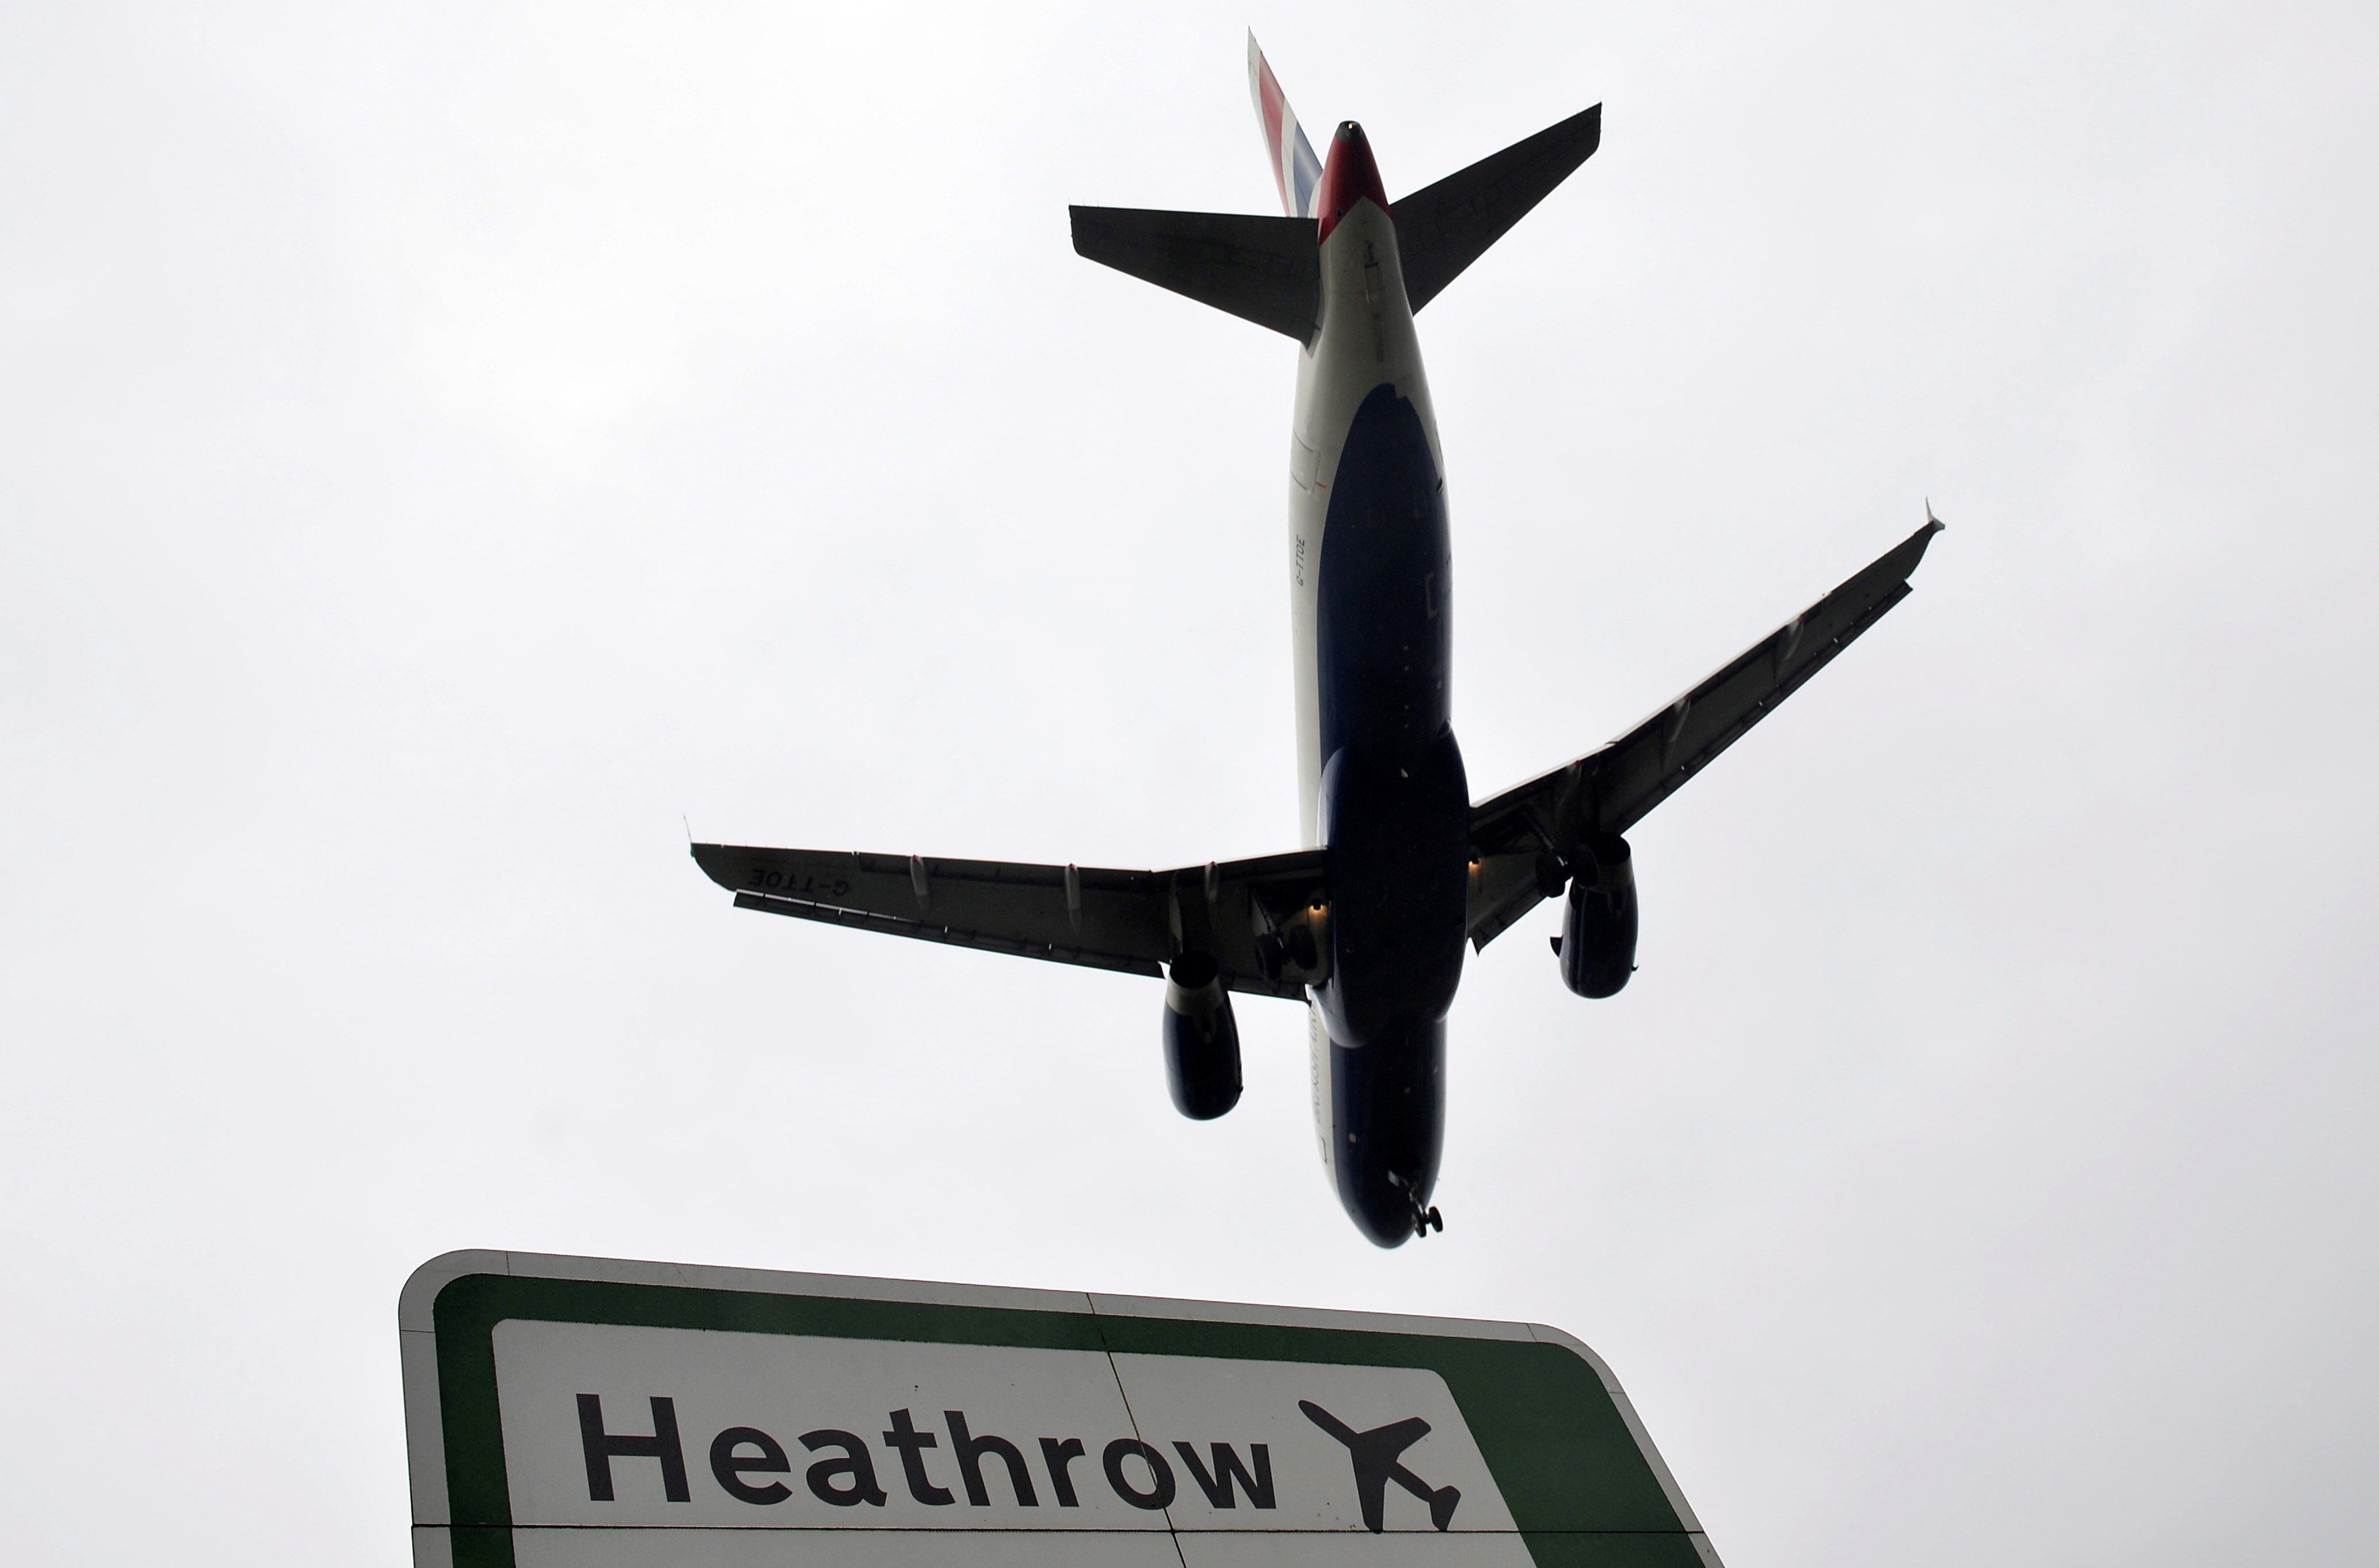 L'aeroport de Heathrow suspèn els seus vols per culpa d'un dron